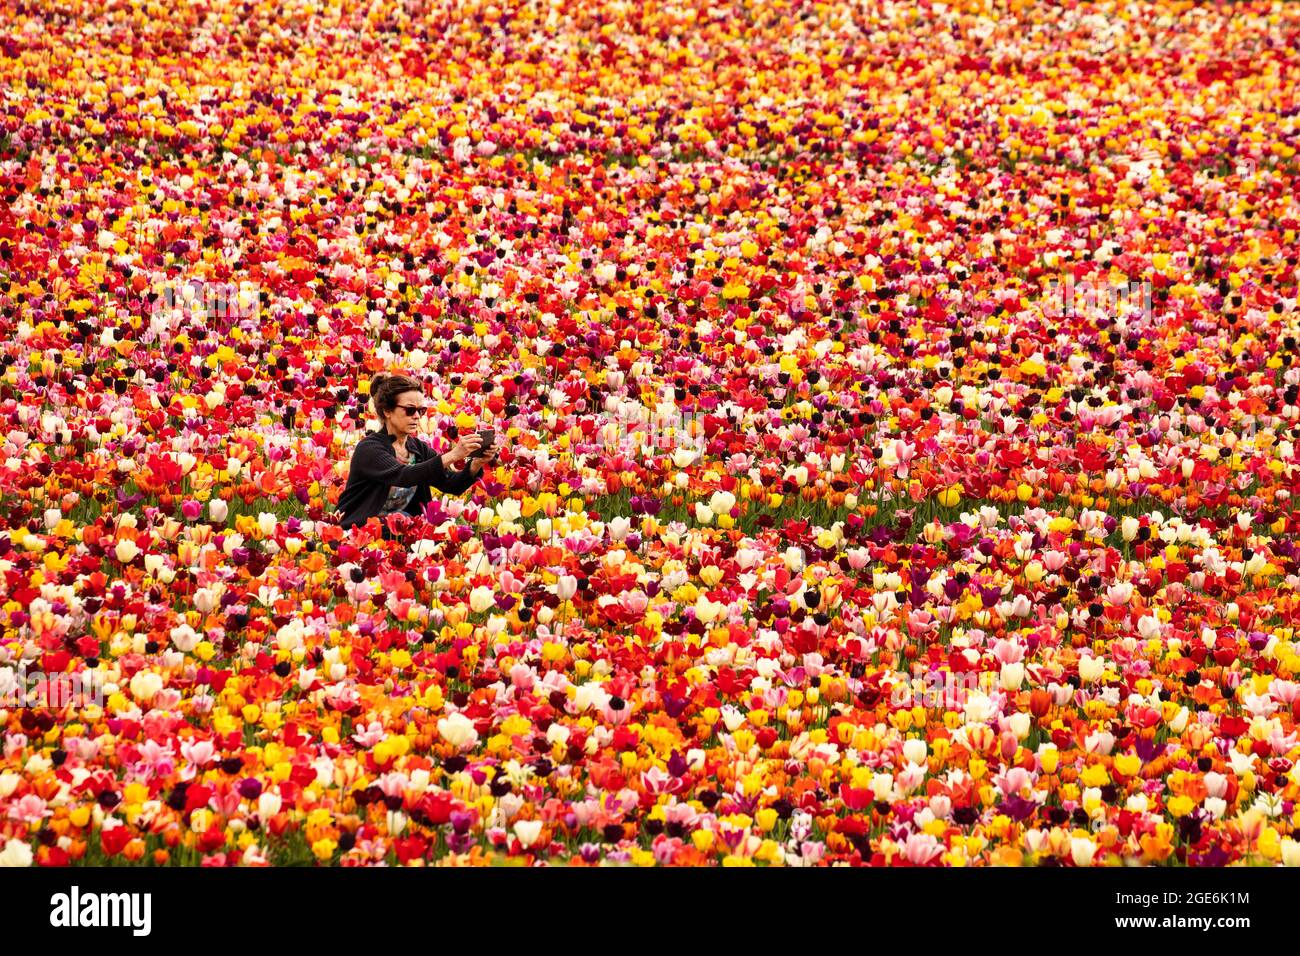 The Netherlands, Noordwijkerhout, Tulips, tulip fields. Model released. Stock Photo